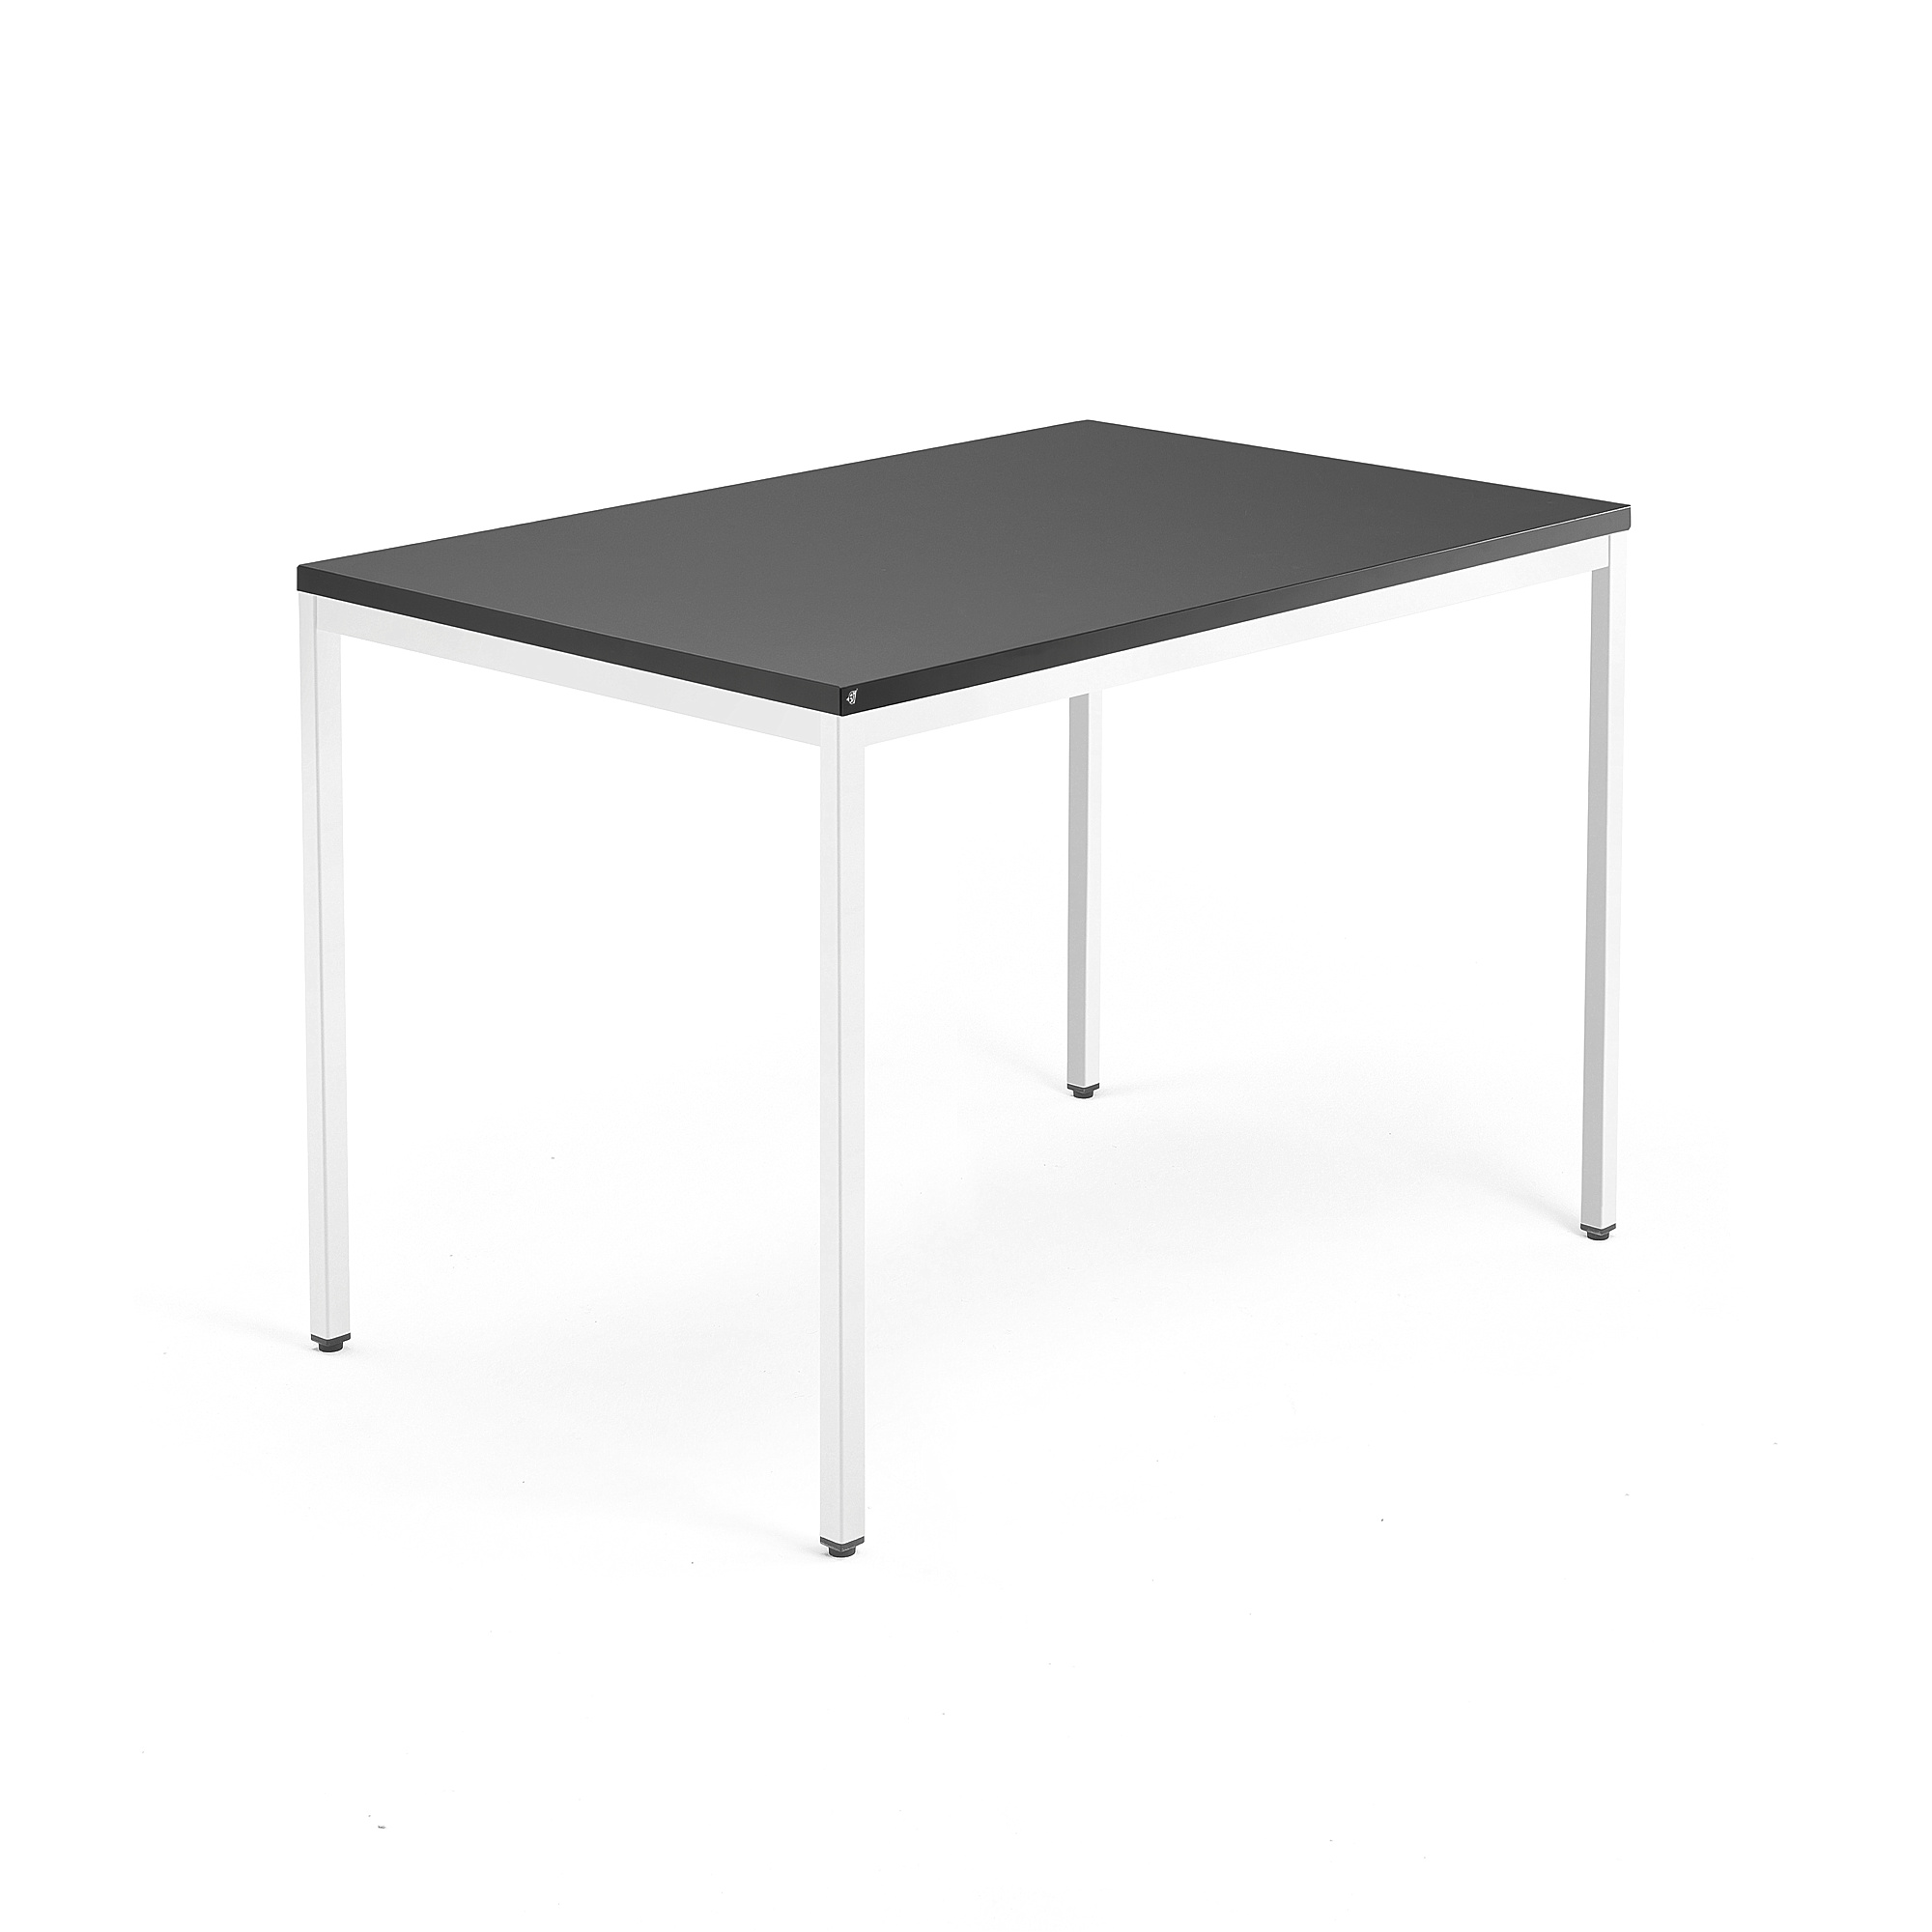 Psací stůl QBUS, 4 nohy, 1200x800 mm, bílý rám, černá